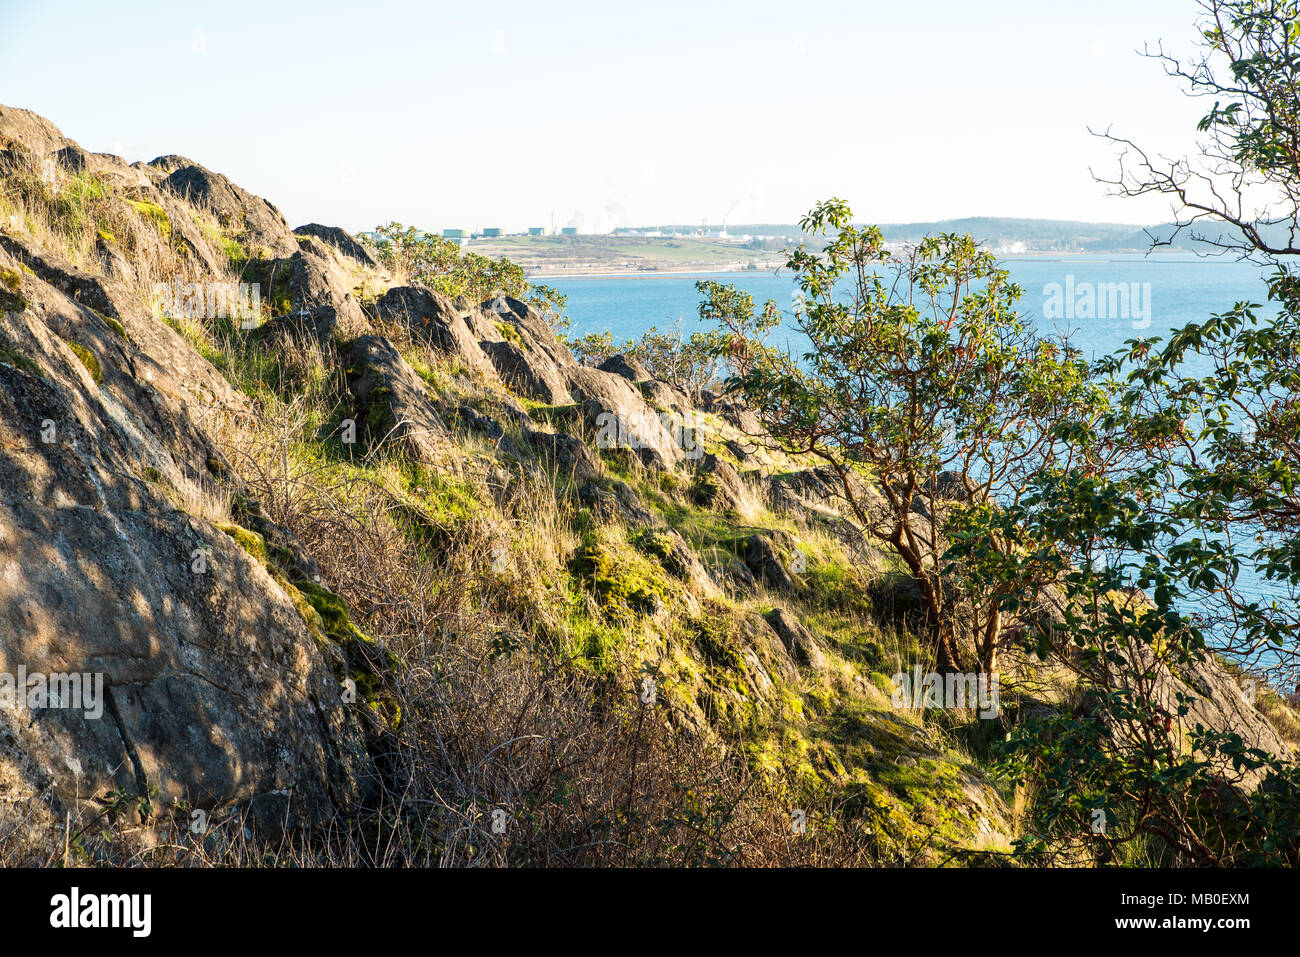 Grasbewachsene Rock auf der Kappe Sante-Cap Sante ist ein Aussichtspunkt auf einem Hügel oberhalb von Anacortes. Der Himmel ist Diesig Anfang Dezember, aber Gras und madrona Bäume sind grün. Stockfoto